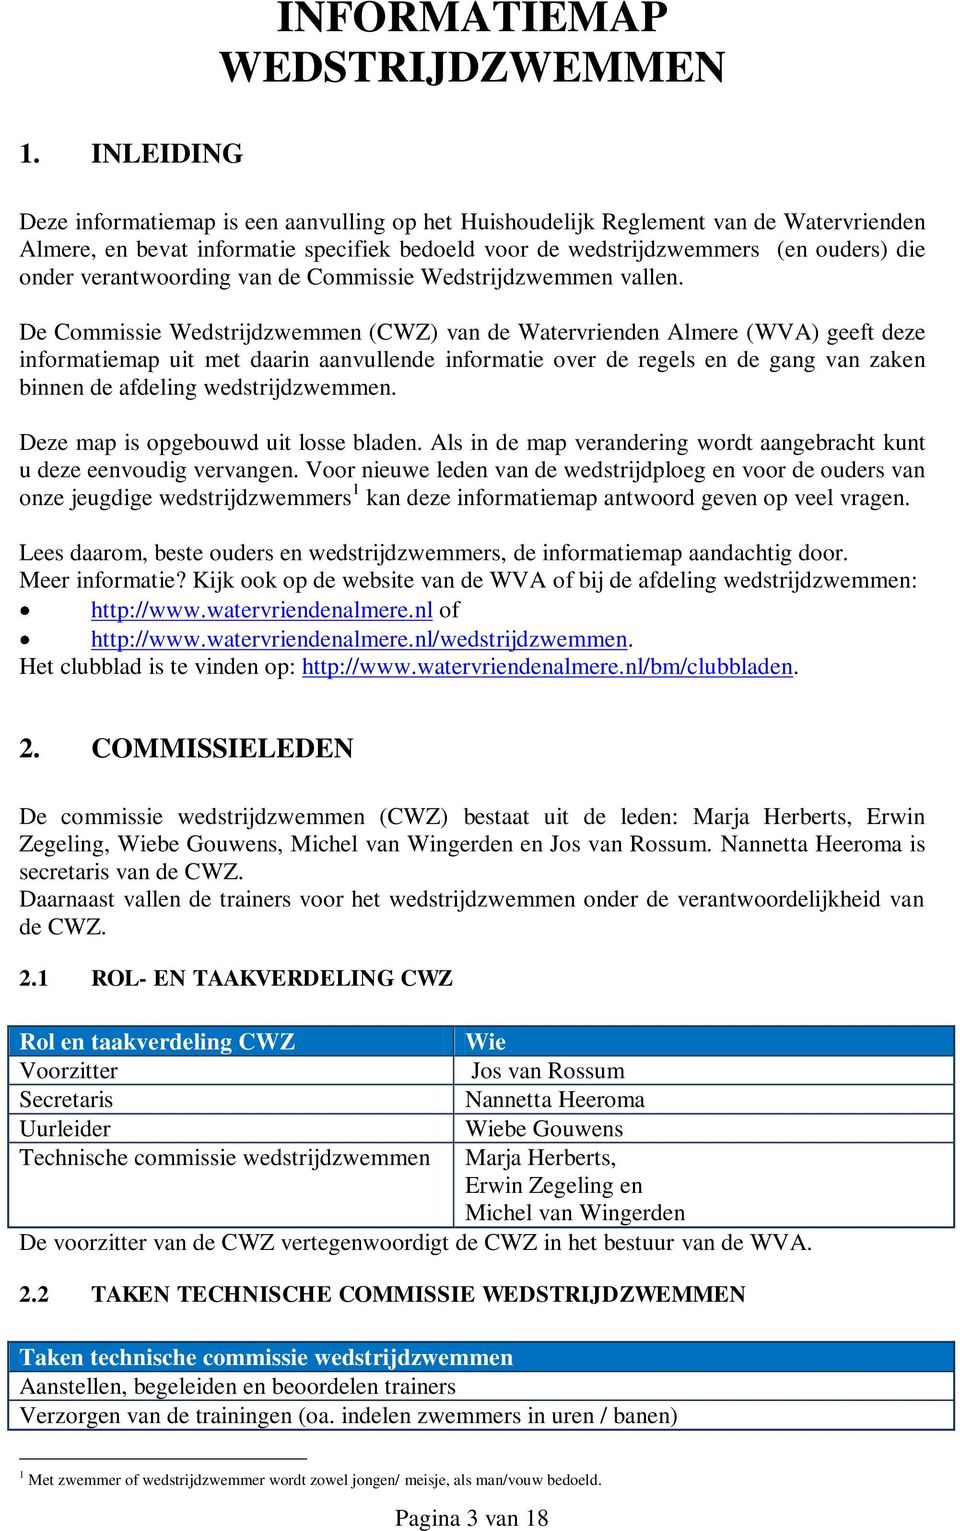 De Commissie Wedstrijdzwemmen (CWZ) van de Watervrienden Almere (WVA) geeft deze informatiemap uit met daarin aanvullende informatie over de regels en de gang van zaken binnen de afdeling